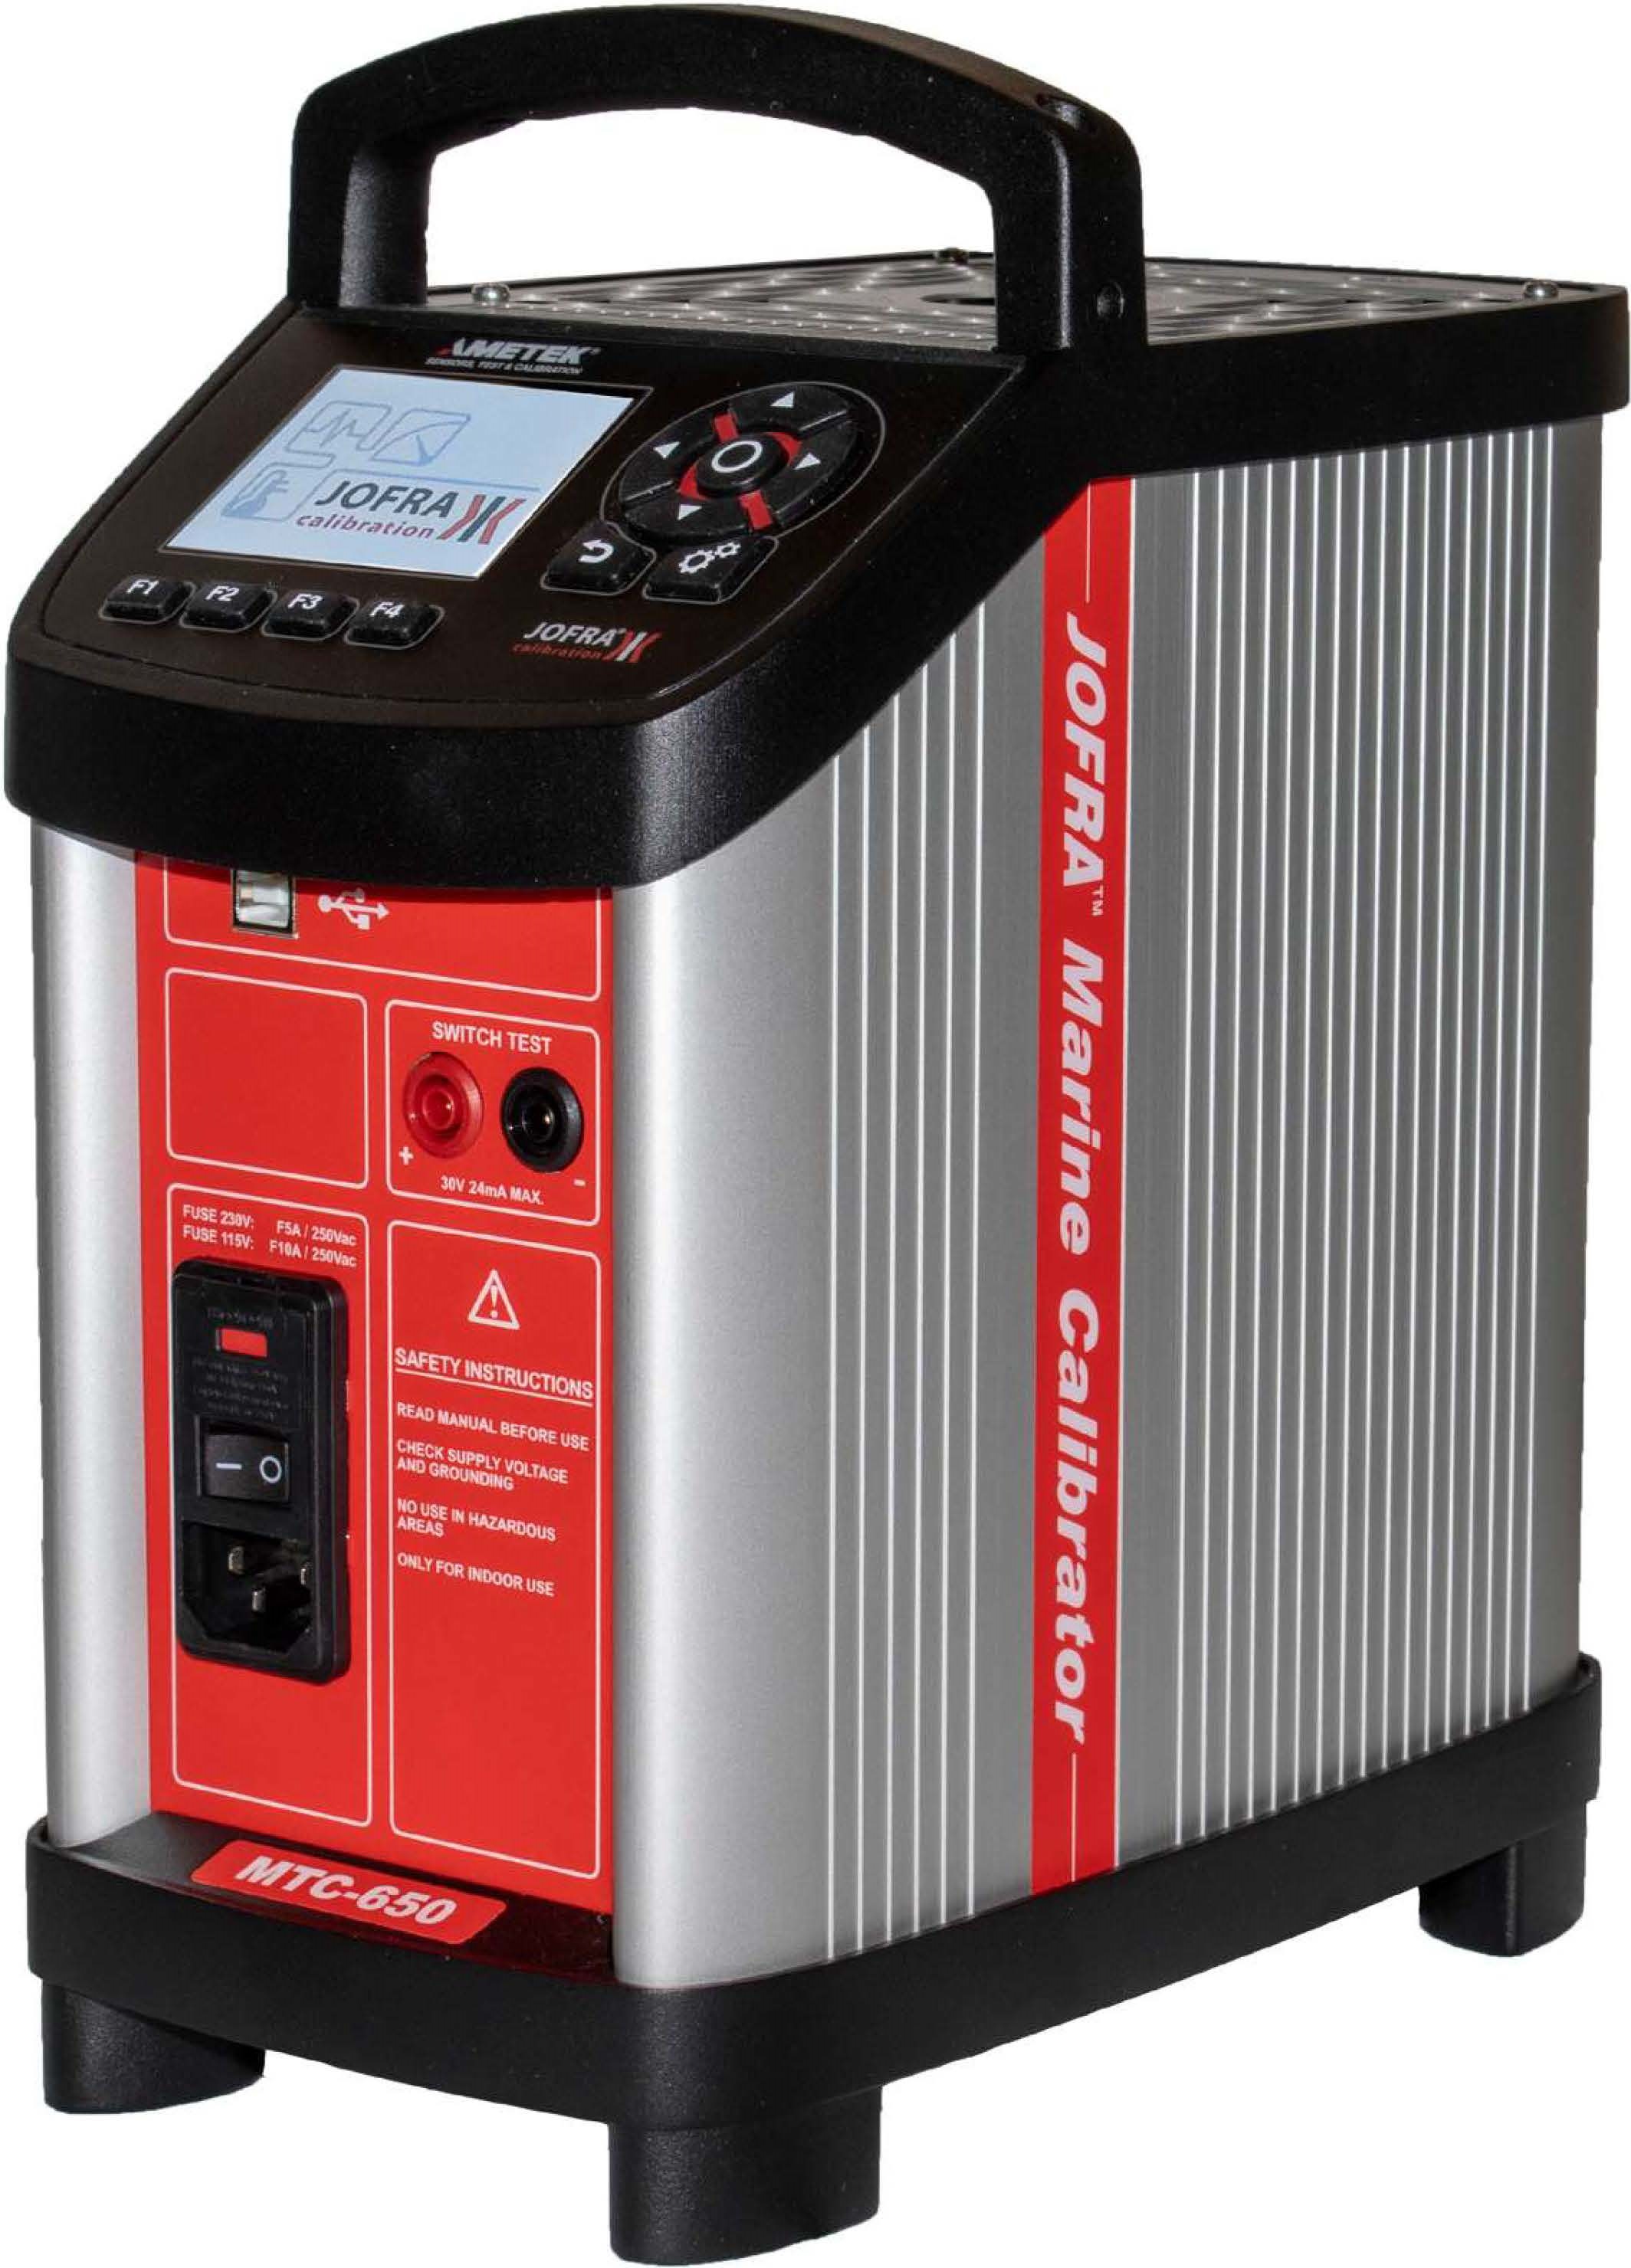 Jofra MTC650 MTC Marine Temperature Calibrator